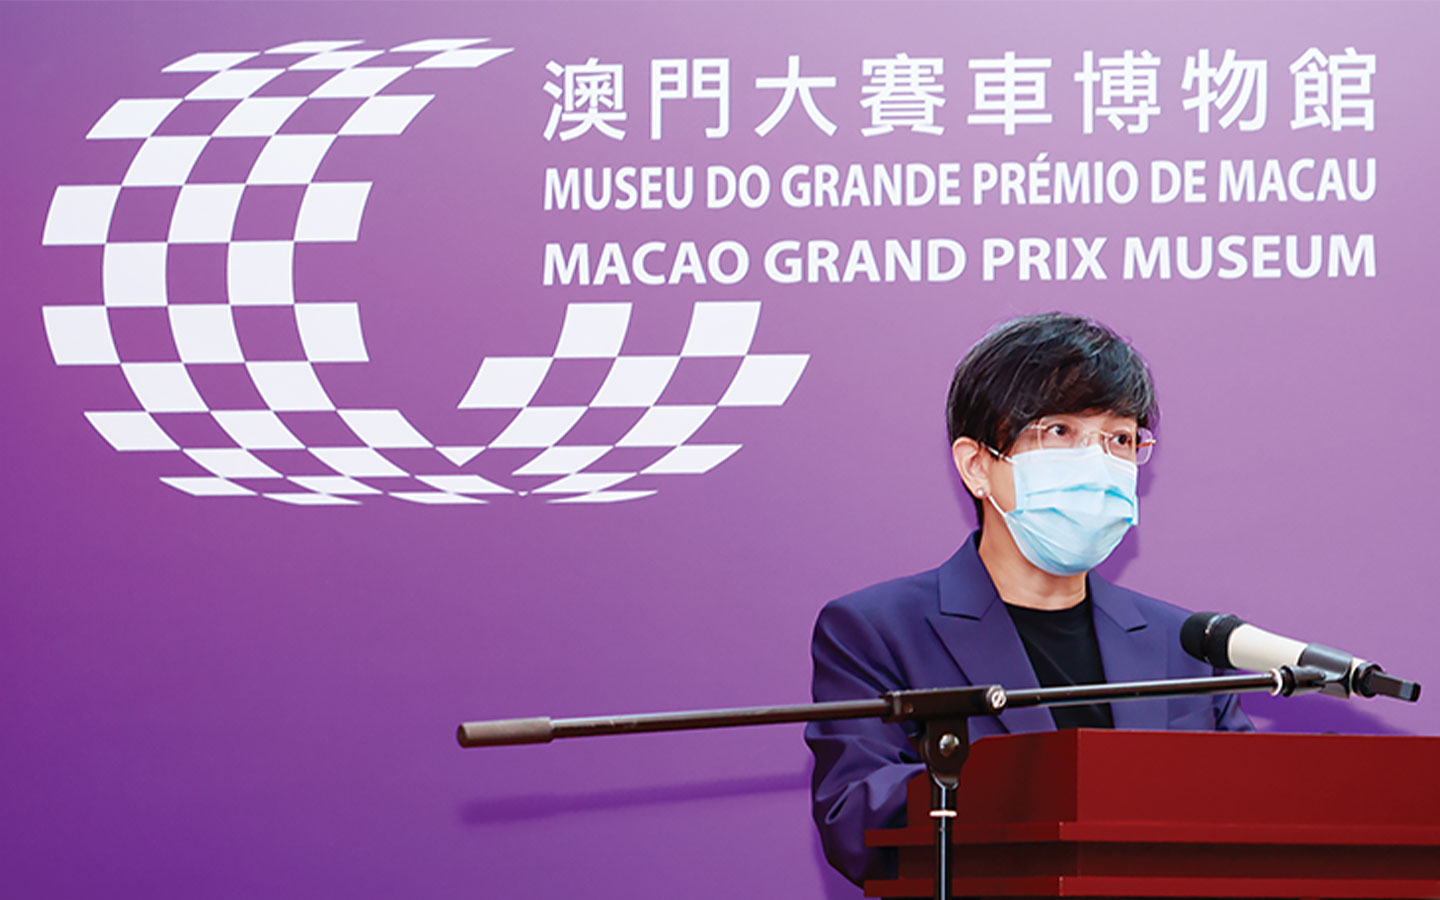 Macao Week postponed in Chongqing